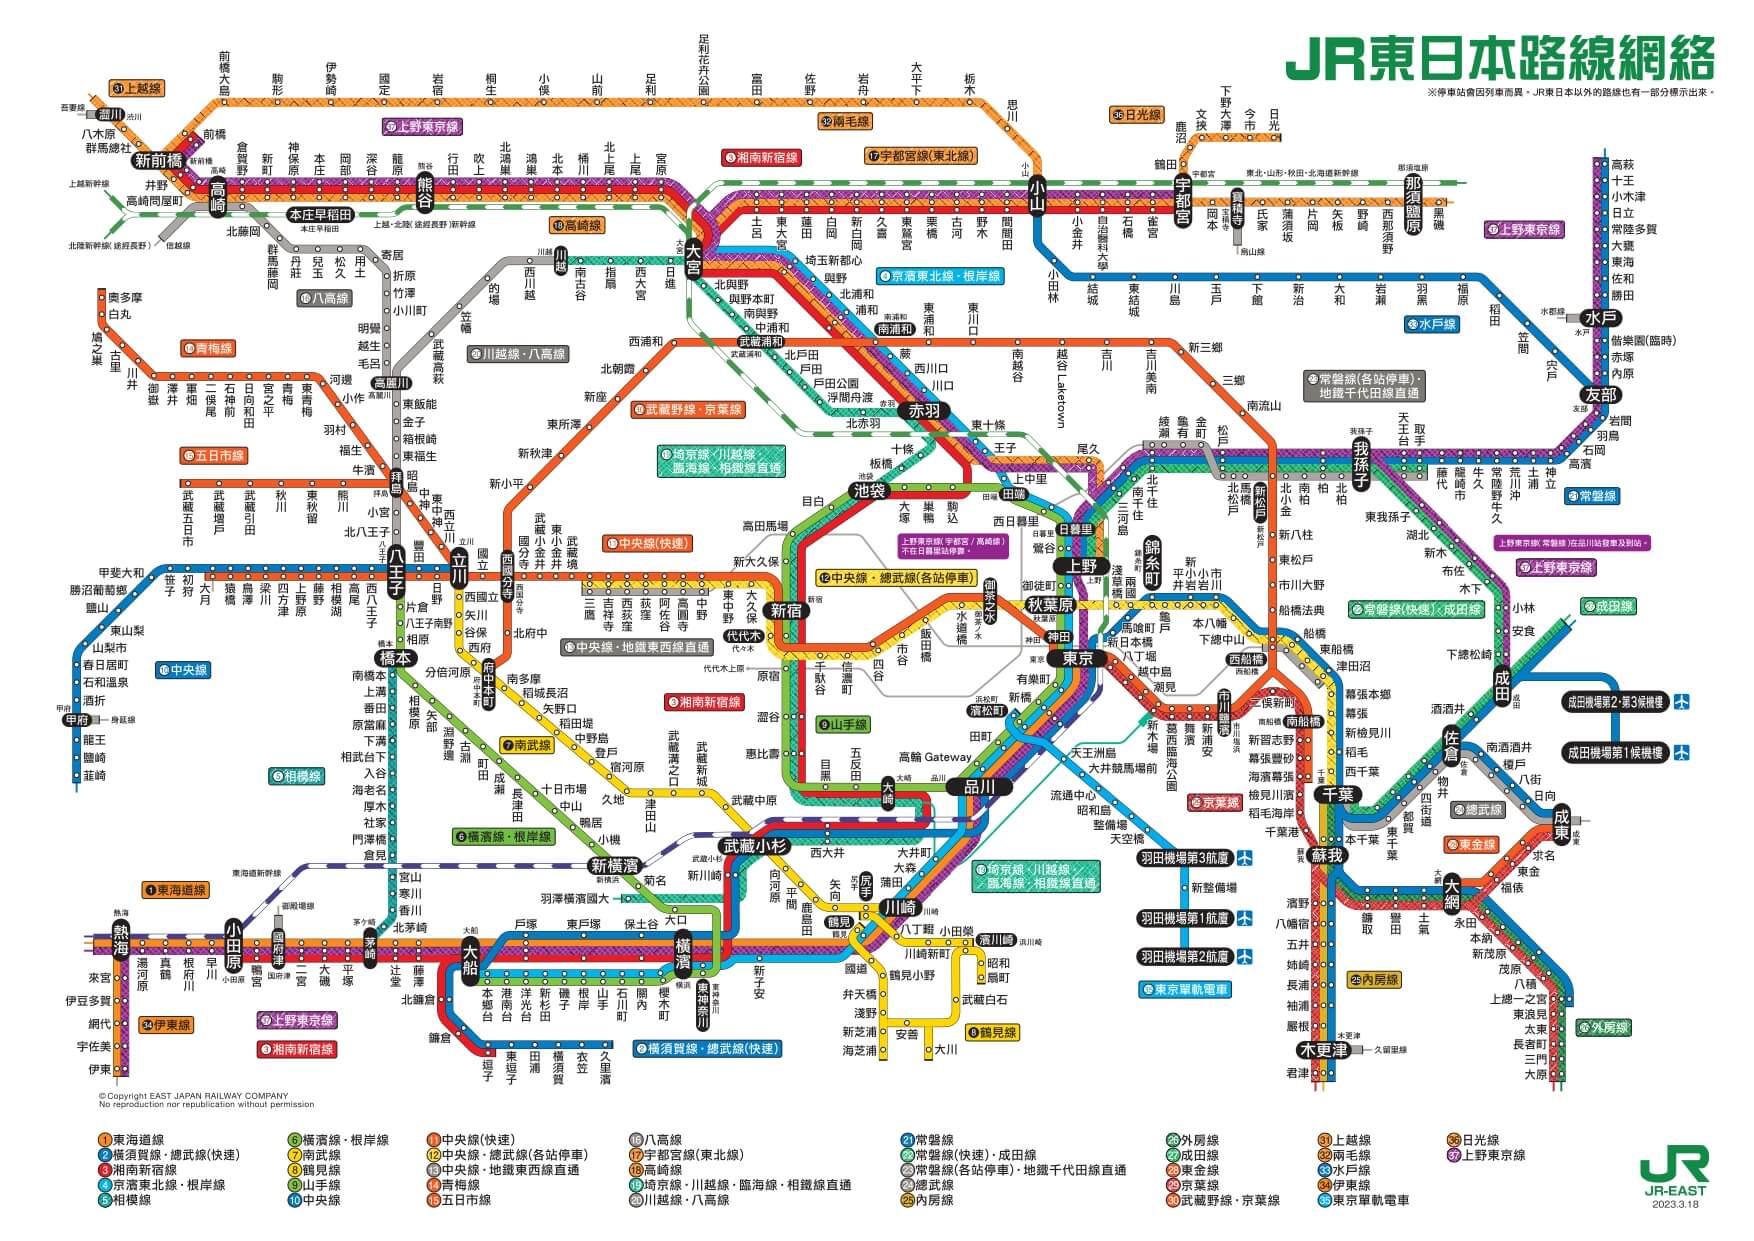 東京JR東日本路線圖